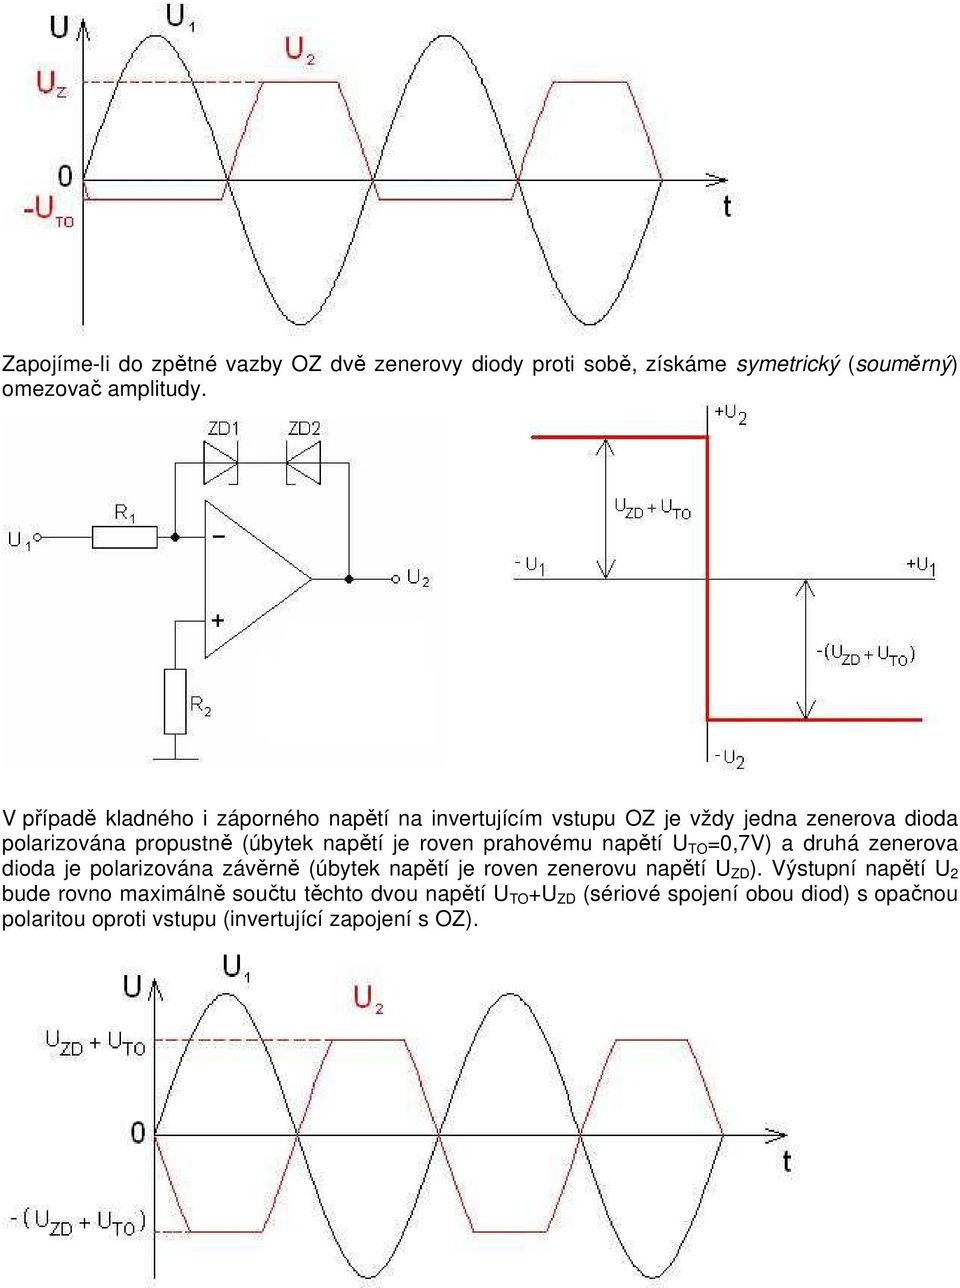 je roven prahovému napětí TO,7V) a druhá zenerova dioda je polarizována závěrně (úbytek napětí je roven zenerovu napětí ZD ).